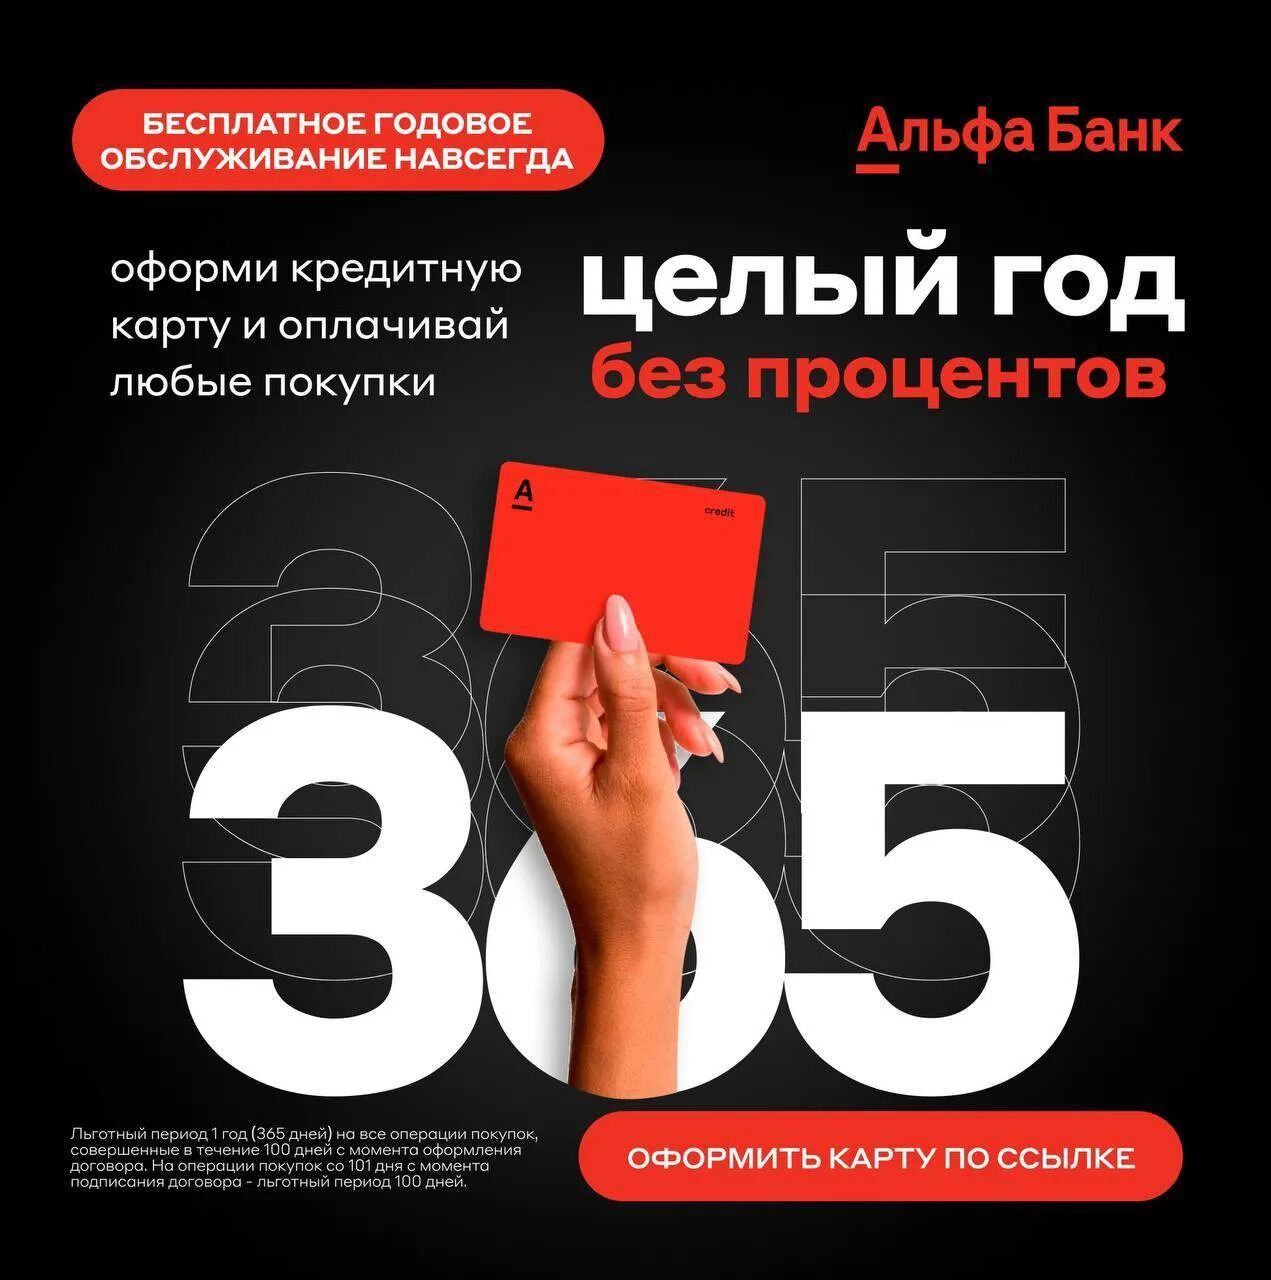 Банка 365 дней